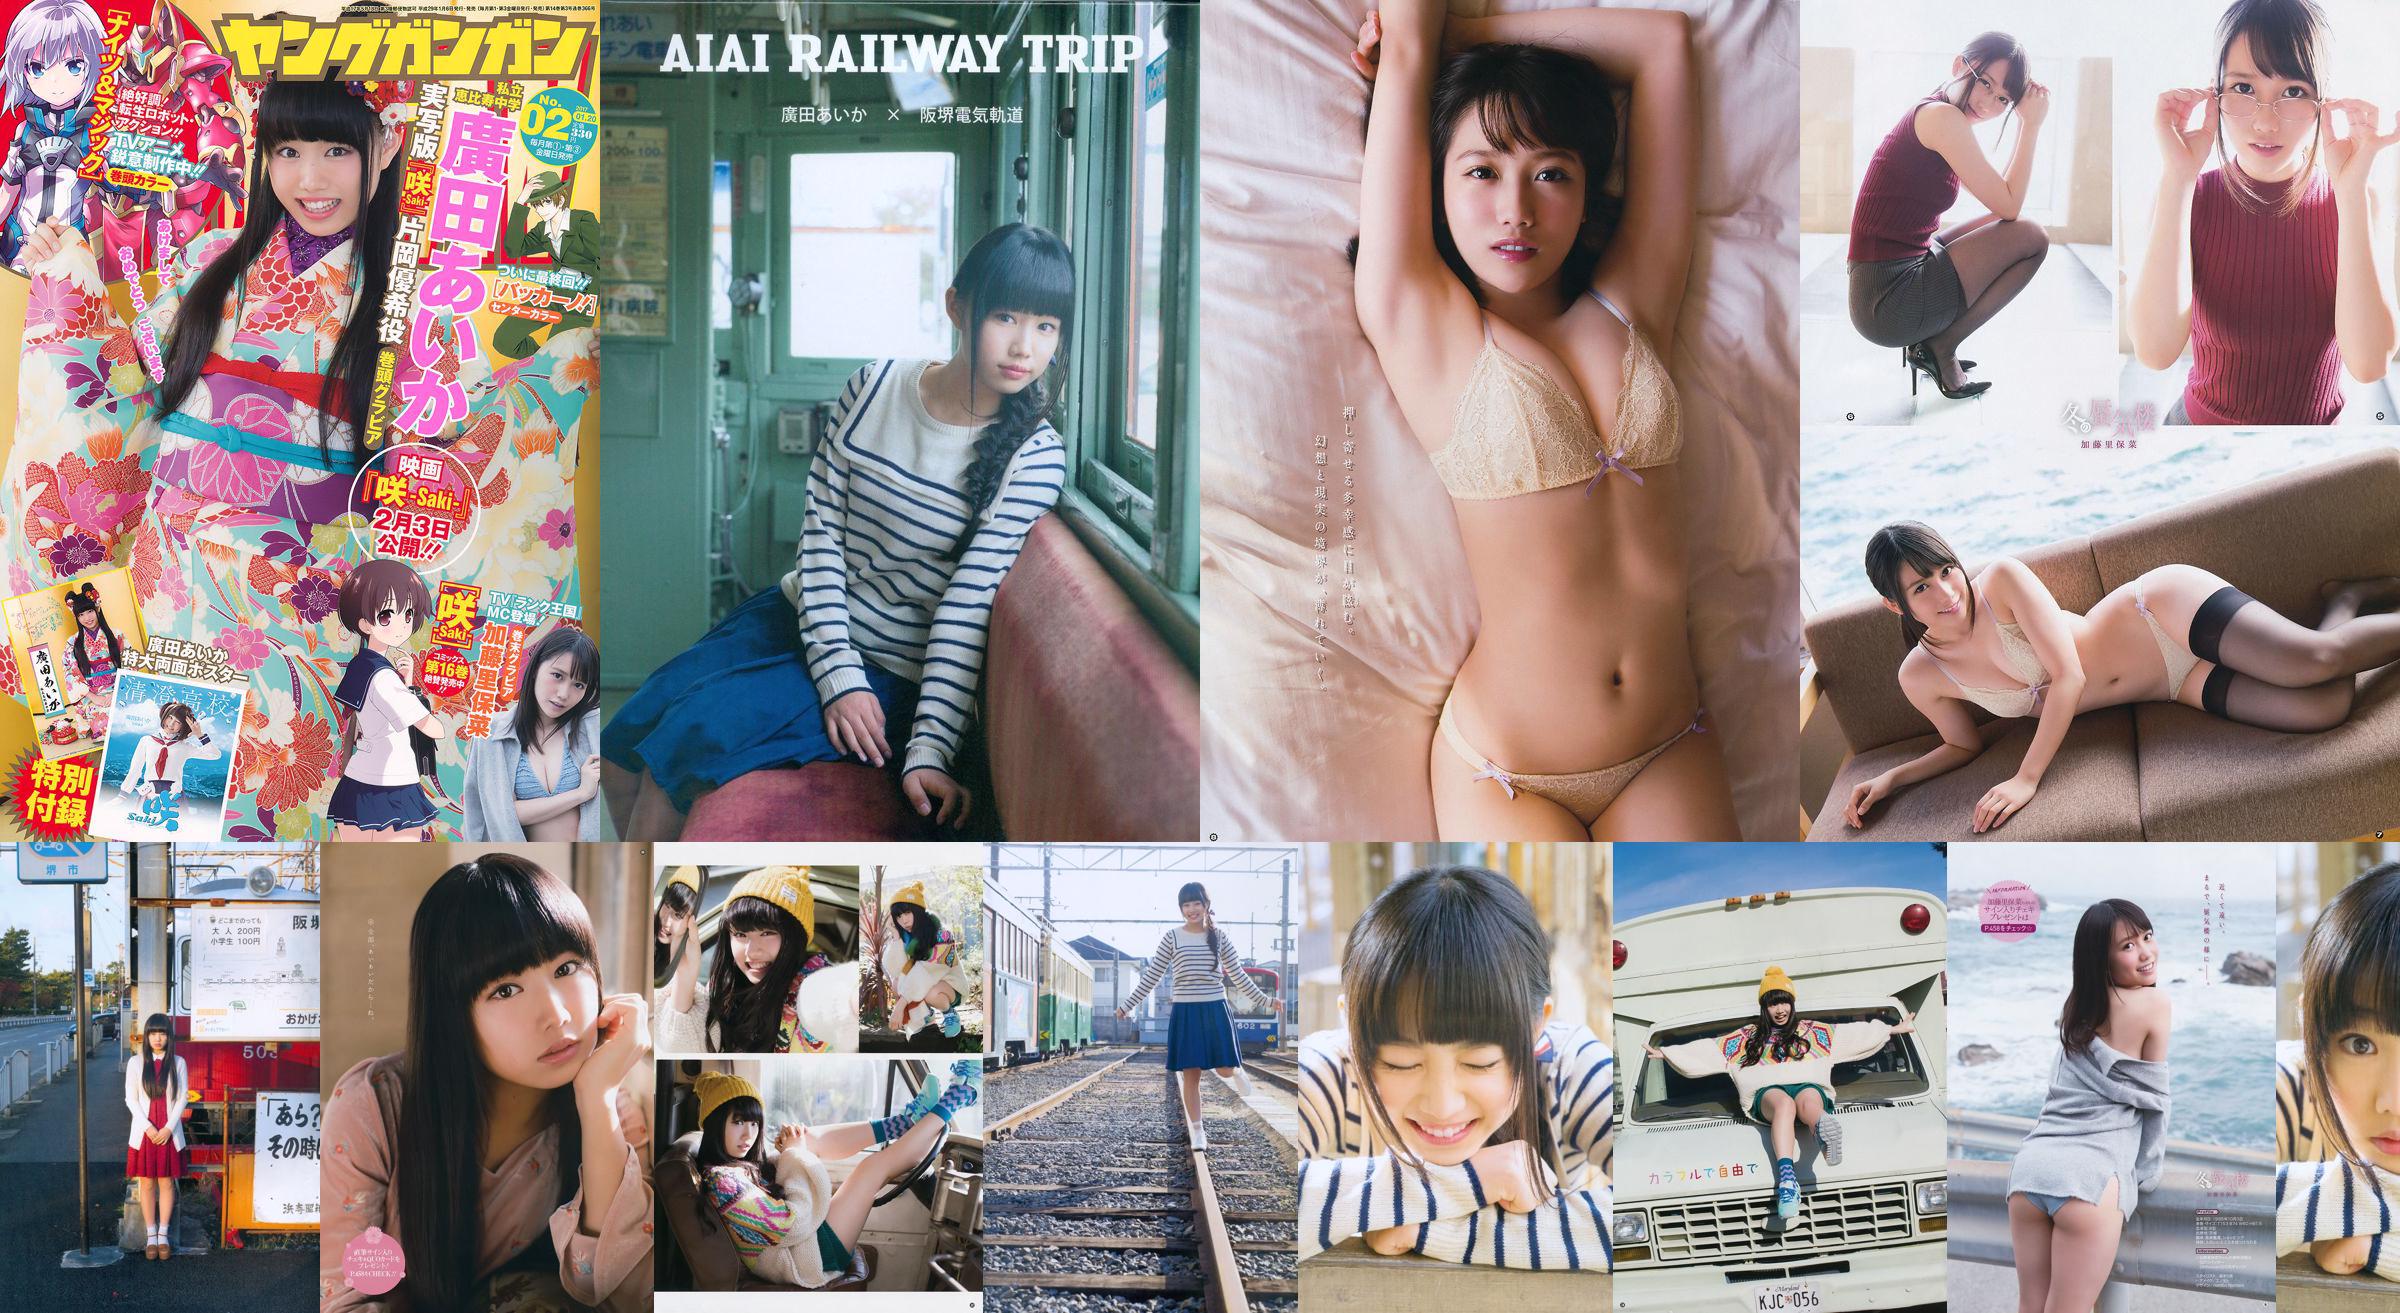 Hirota Aihua / Hirota Aika "AIAI RAILWAY TRIP" Fotolibro DVD [PB] No.9687a1 Pagina 5